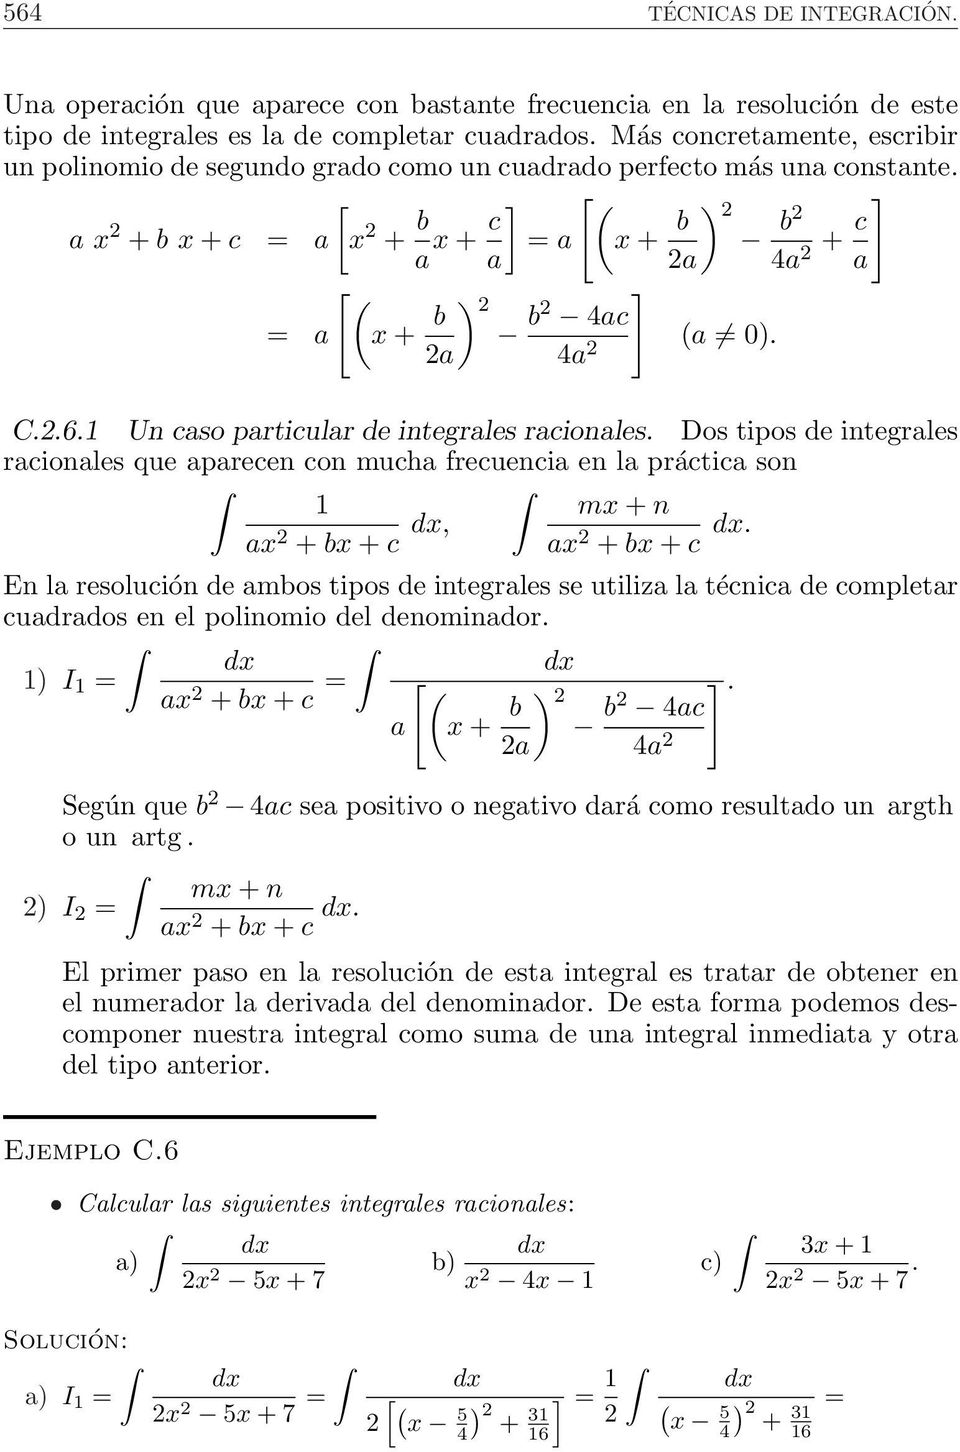 Un caso particular de integrales racionales. Dos tipos de integrales racionales que aparecen con mucha frecuencia en la práctica son a + b + c, m + n a + b + c.